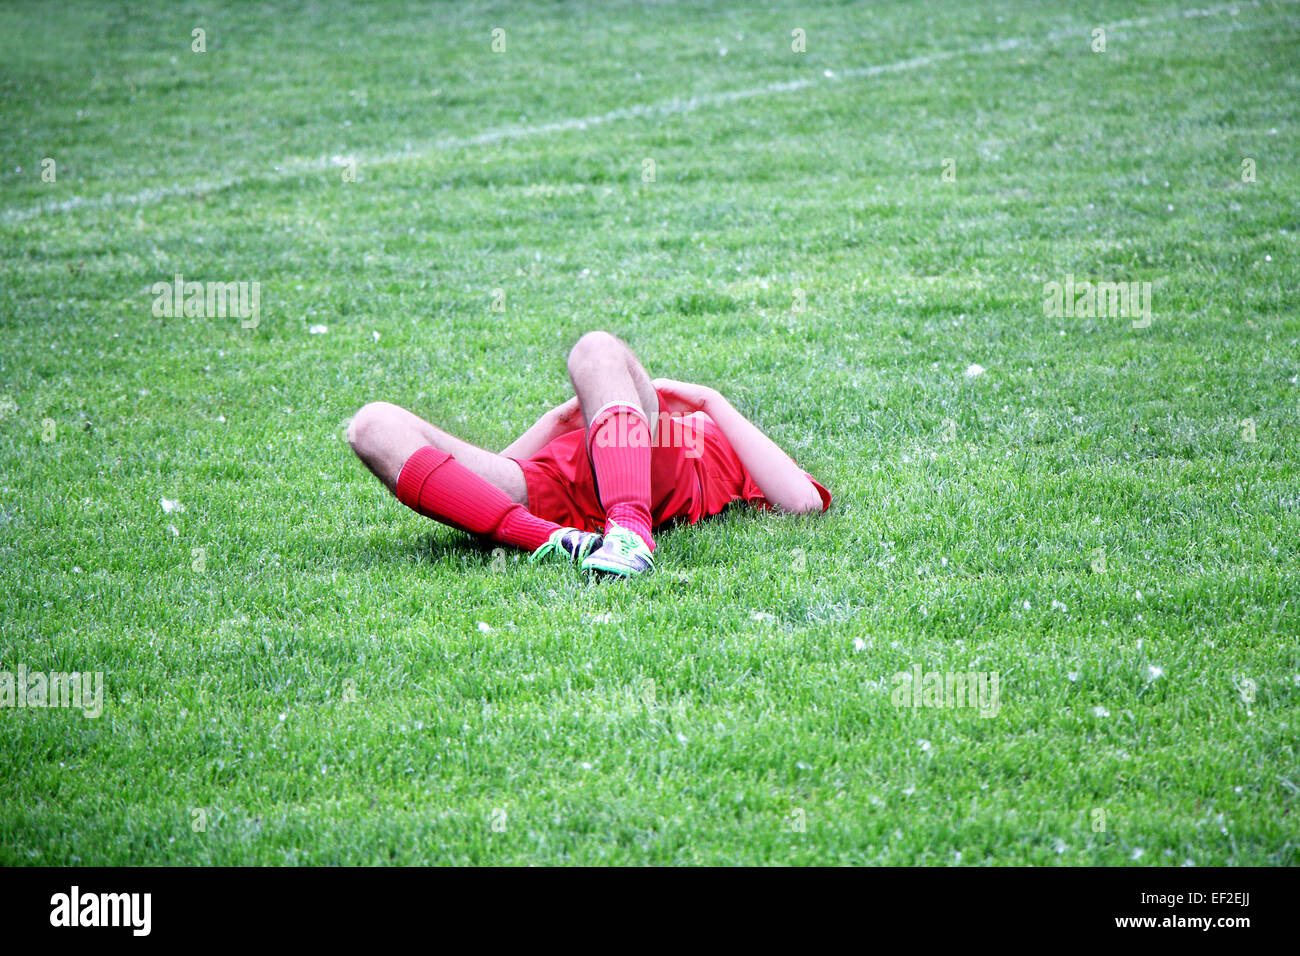 Verletzten Fußball- oder Fußball-Spieler auf dem Boden liegend Stockfoto